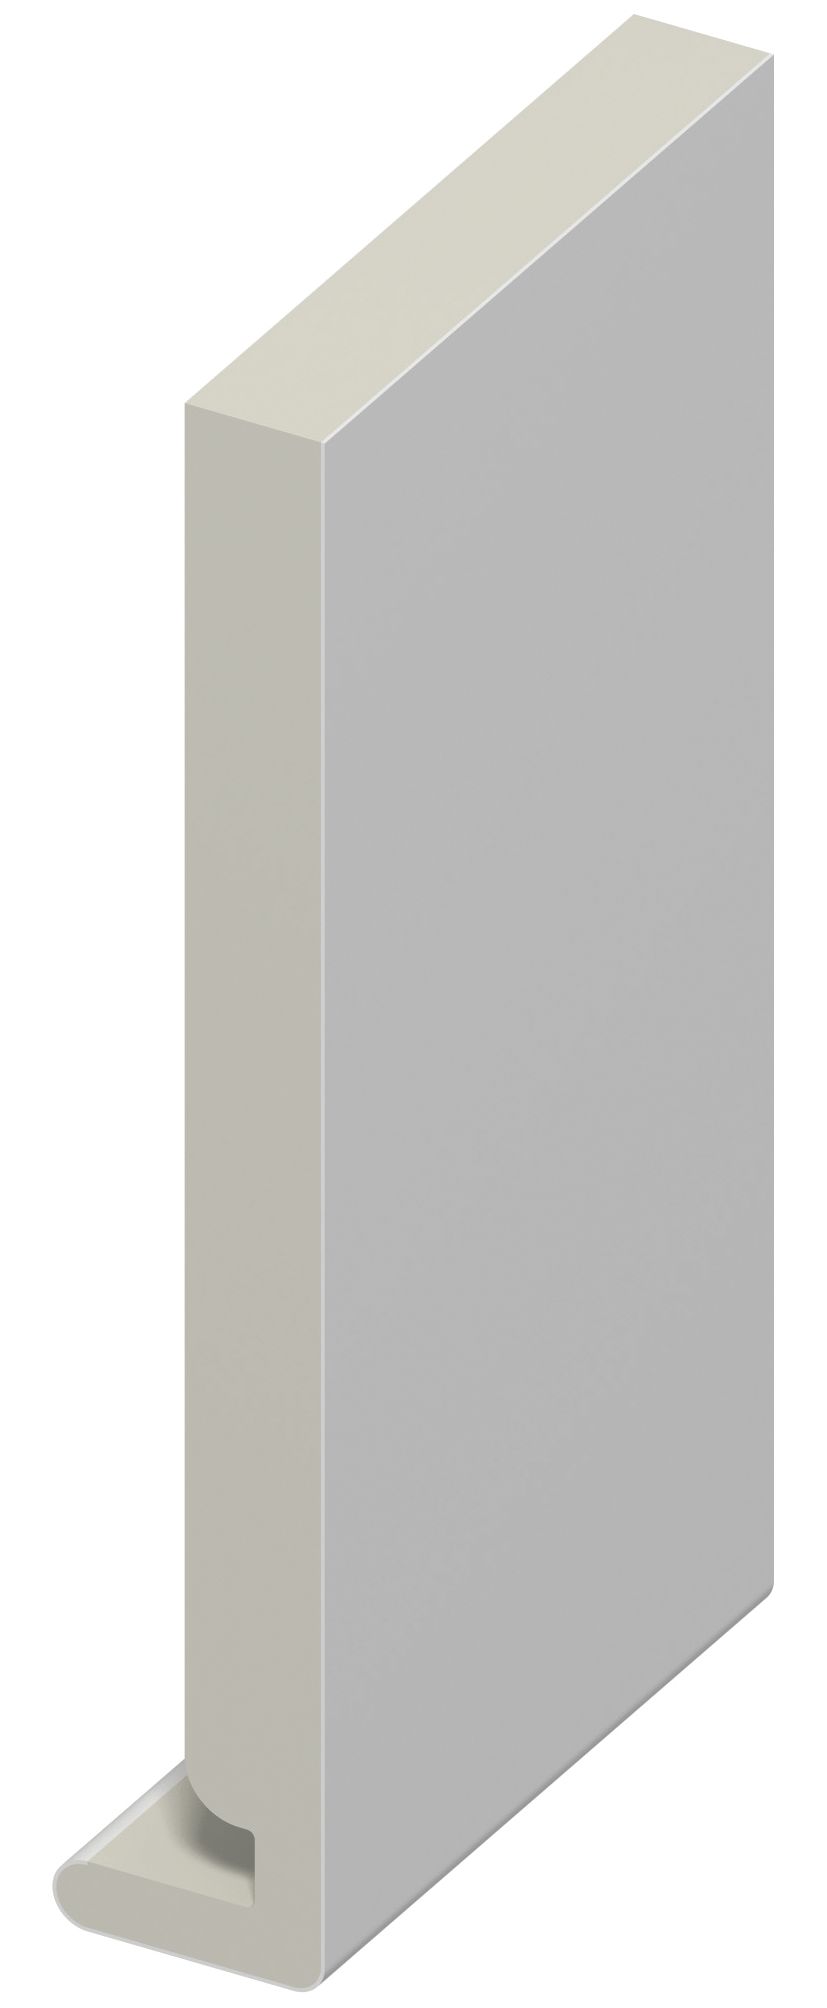 Image of Wickes Fascia Board - 225 x 18 x 5m White